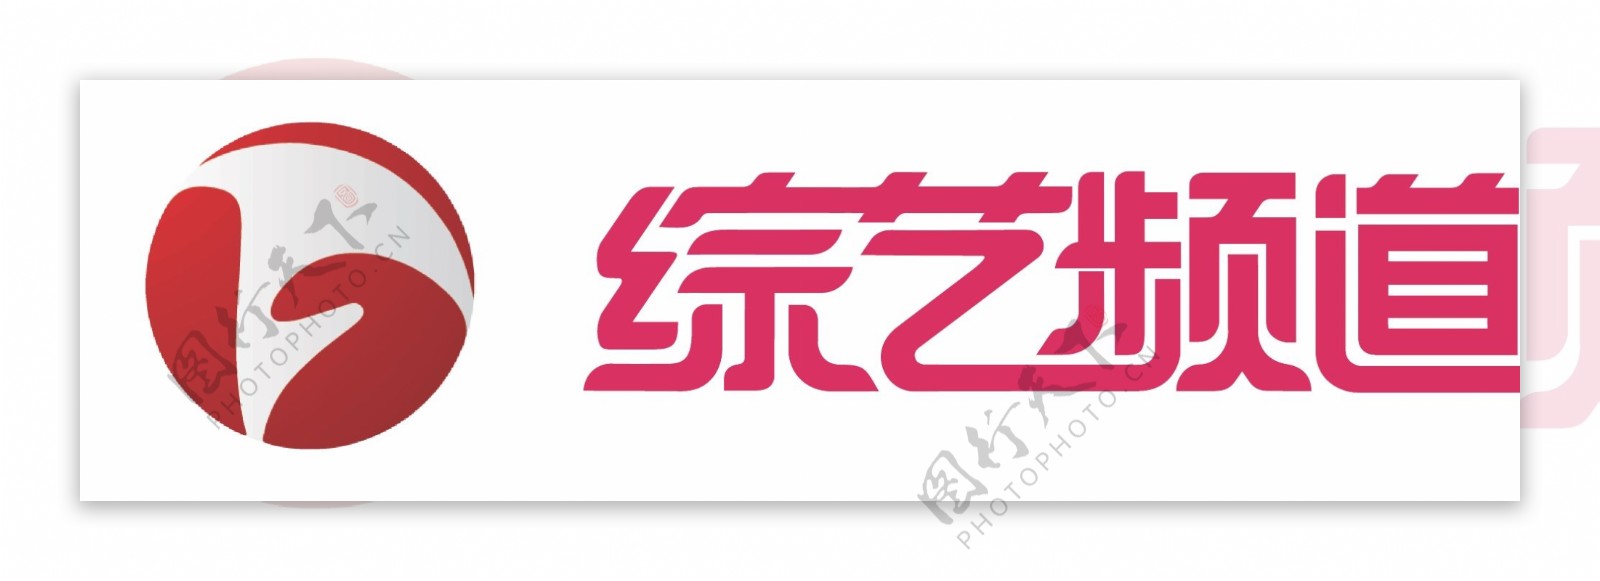 安徽综艺logo图片